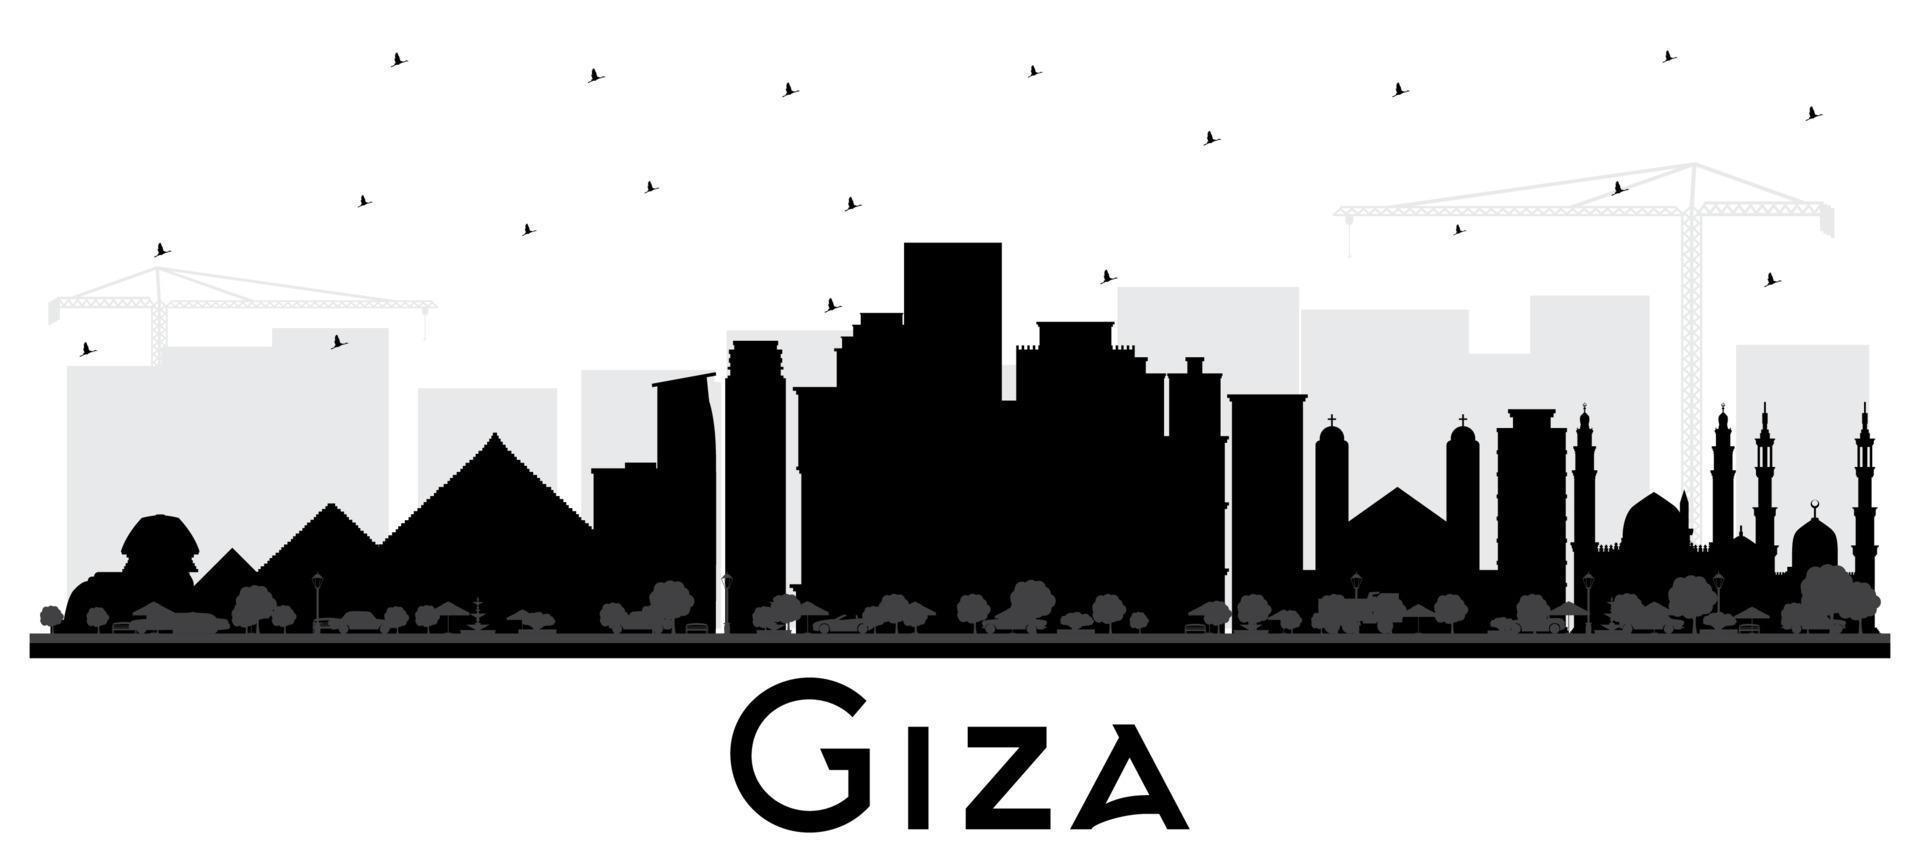 gizeh ägypten city skyline silhouette mit schwarzen gebäuden isoliert auf weiß. vektor